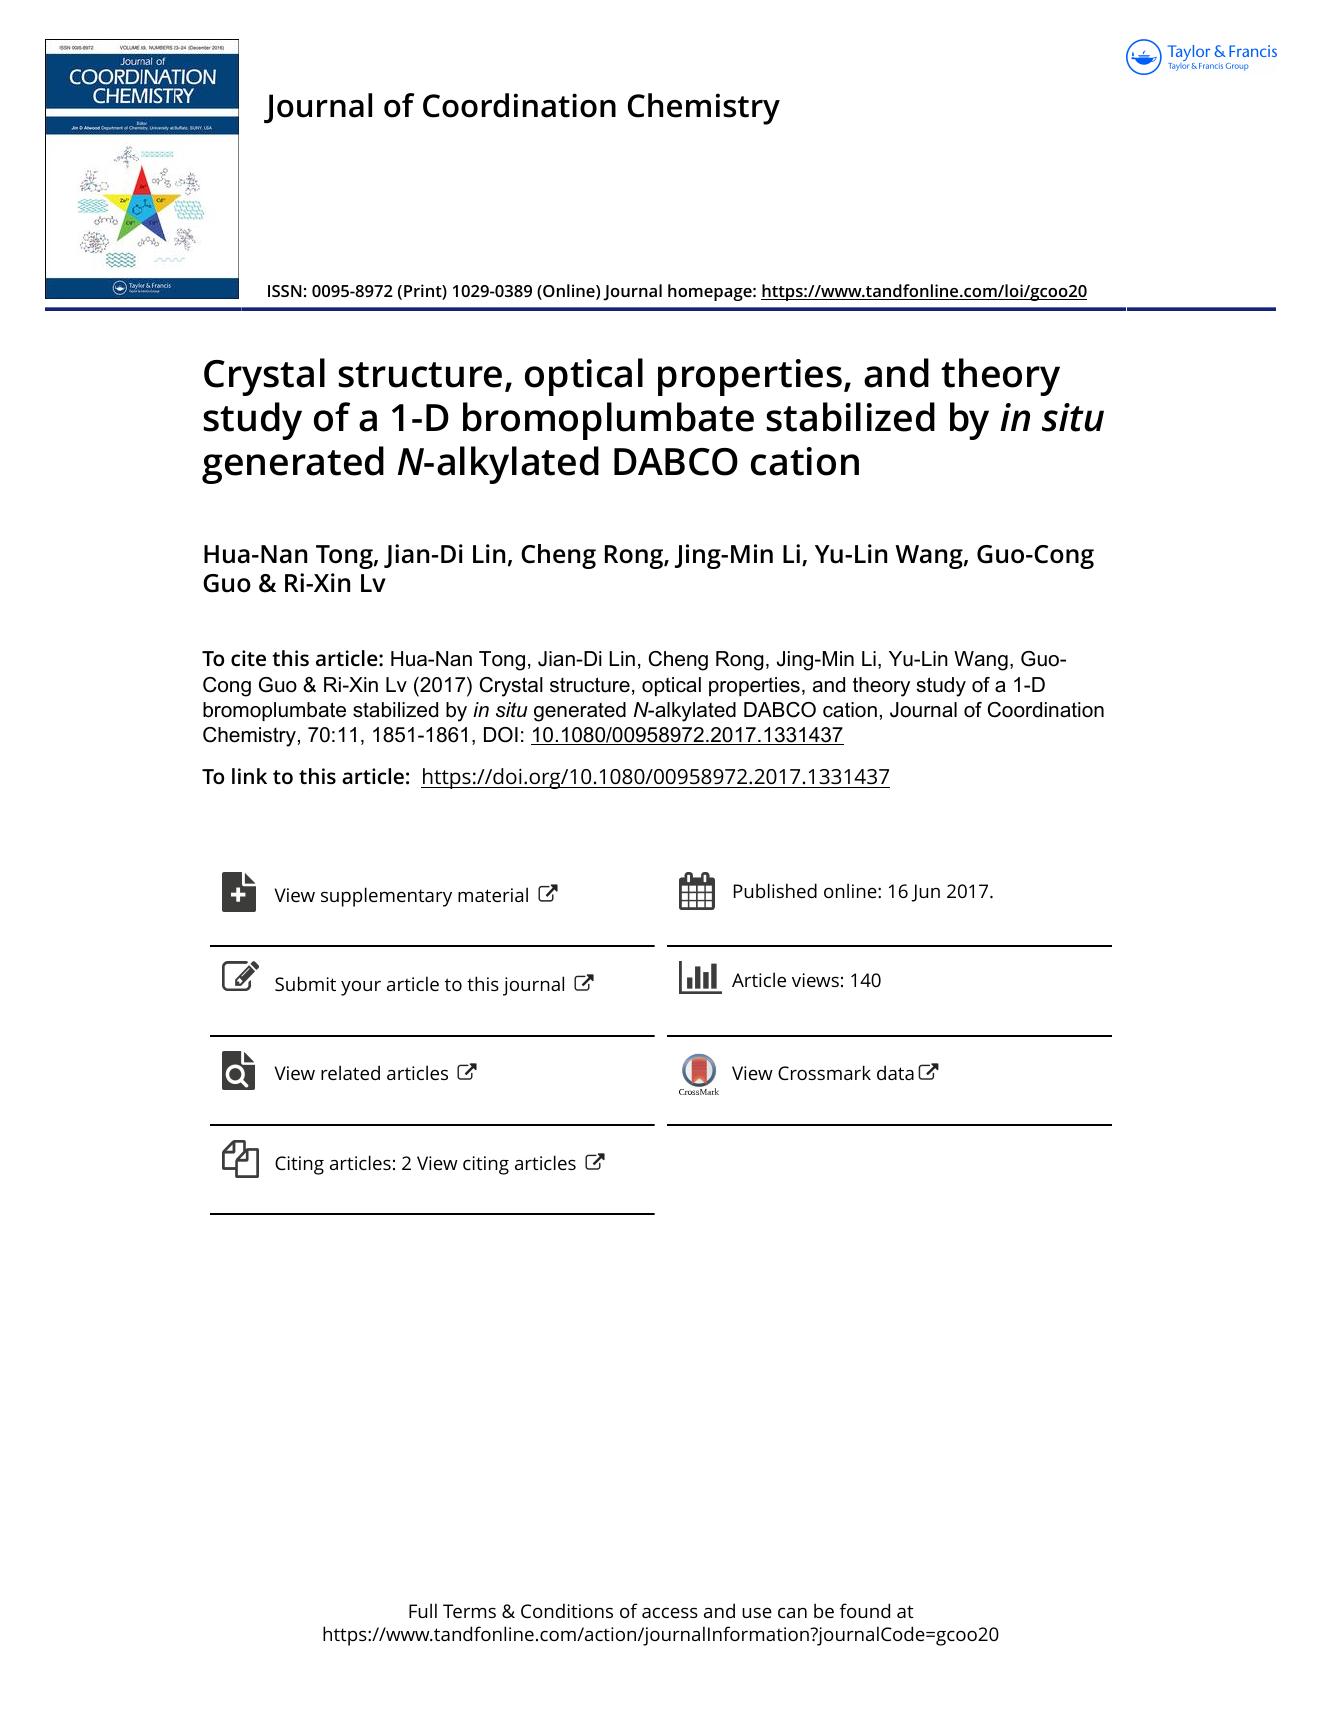 Crystal structure, optical properties and theory study of a 1-D bromoplumbate stabilized by in situ generated N-alkylated DABCO cation by Hua-Nan Tong & Jian-Di Lin & Cheng Rong & Jing-Min Li & Yu-Lin Wang & Guo-Cong Guo & Ri-Xin Lv